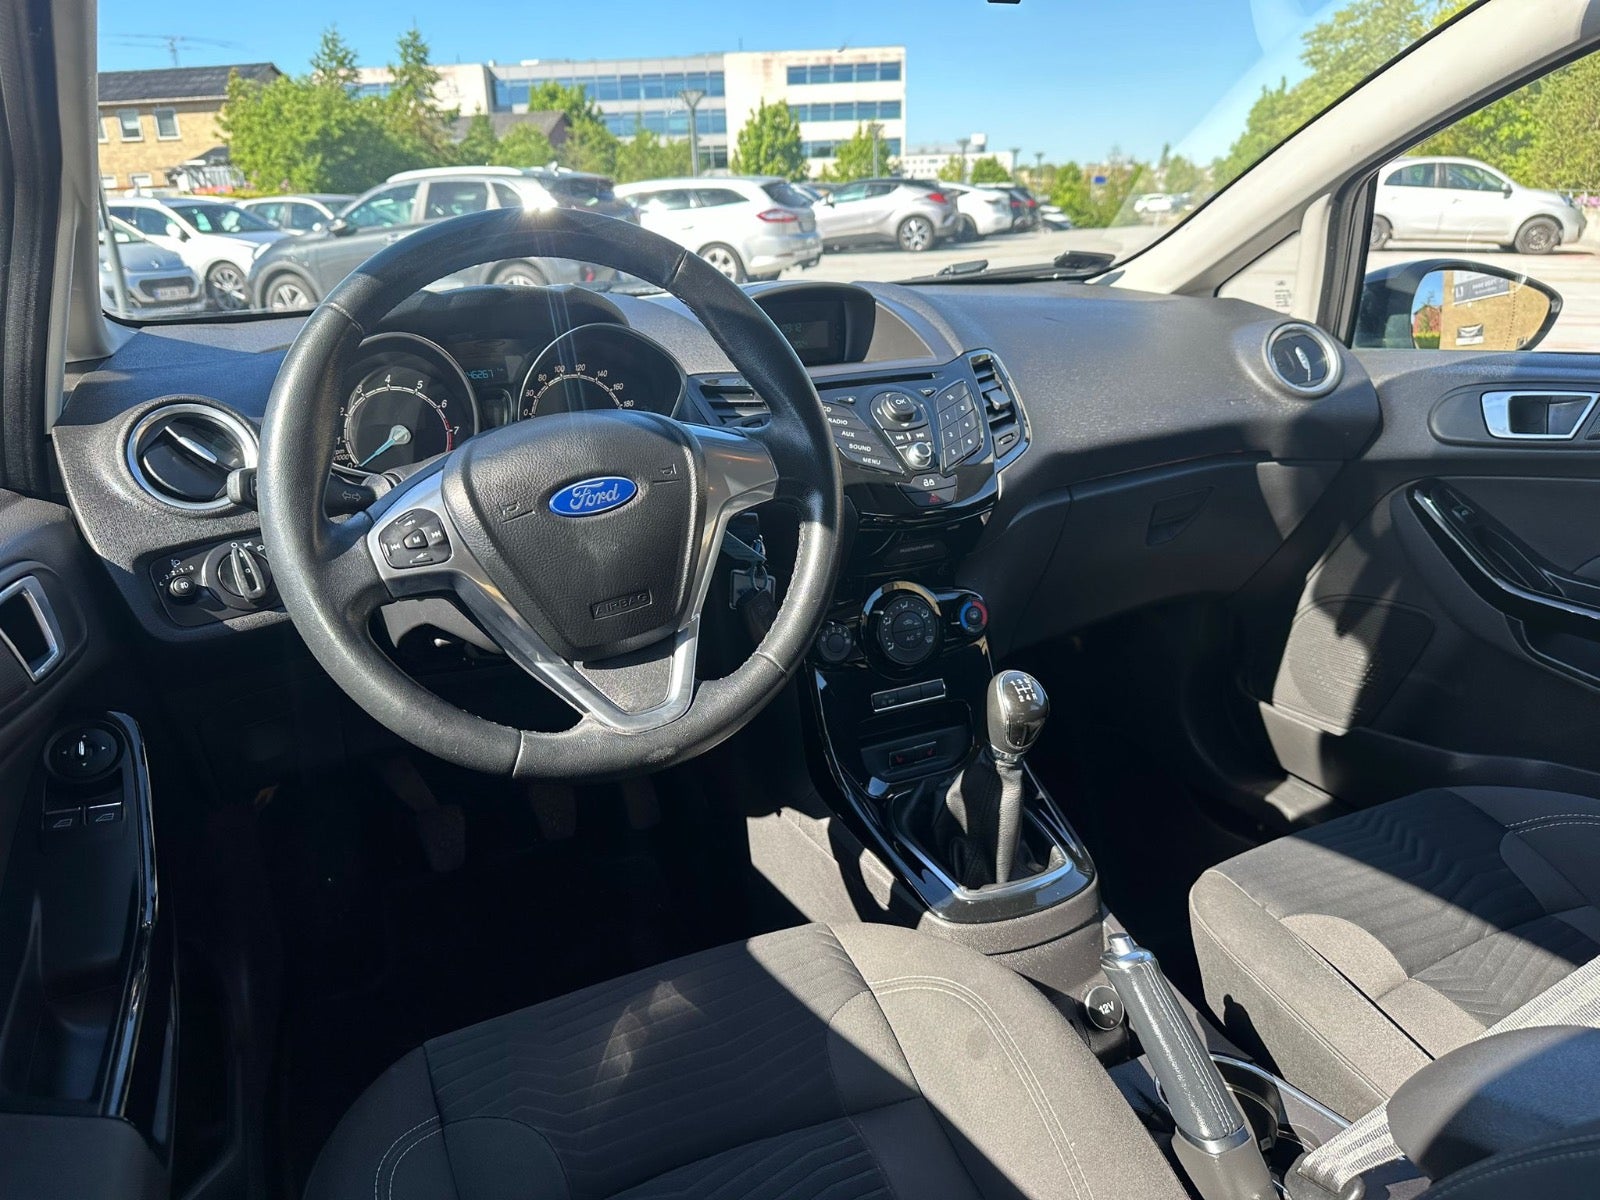 Ford Fiesta 1,0 SCTi 100 Titanium Benzin modelår 2014 km